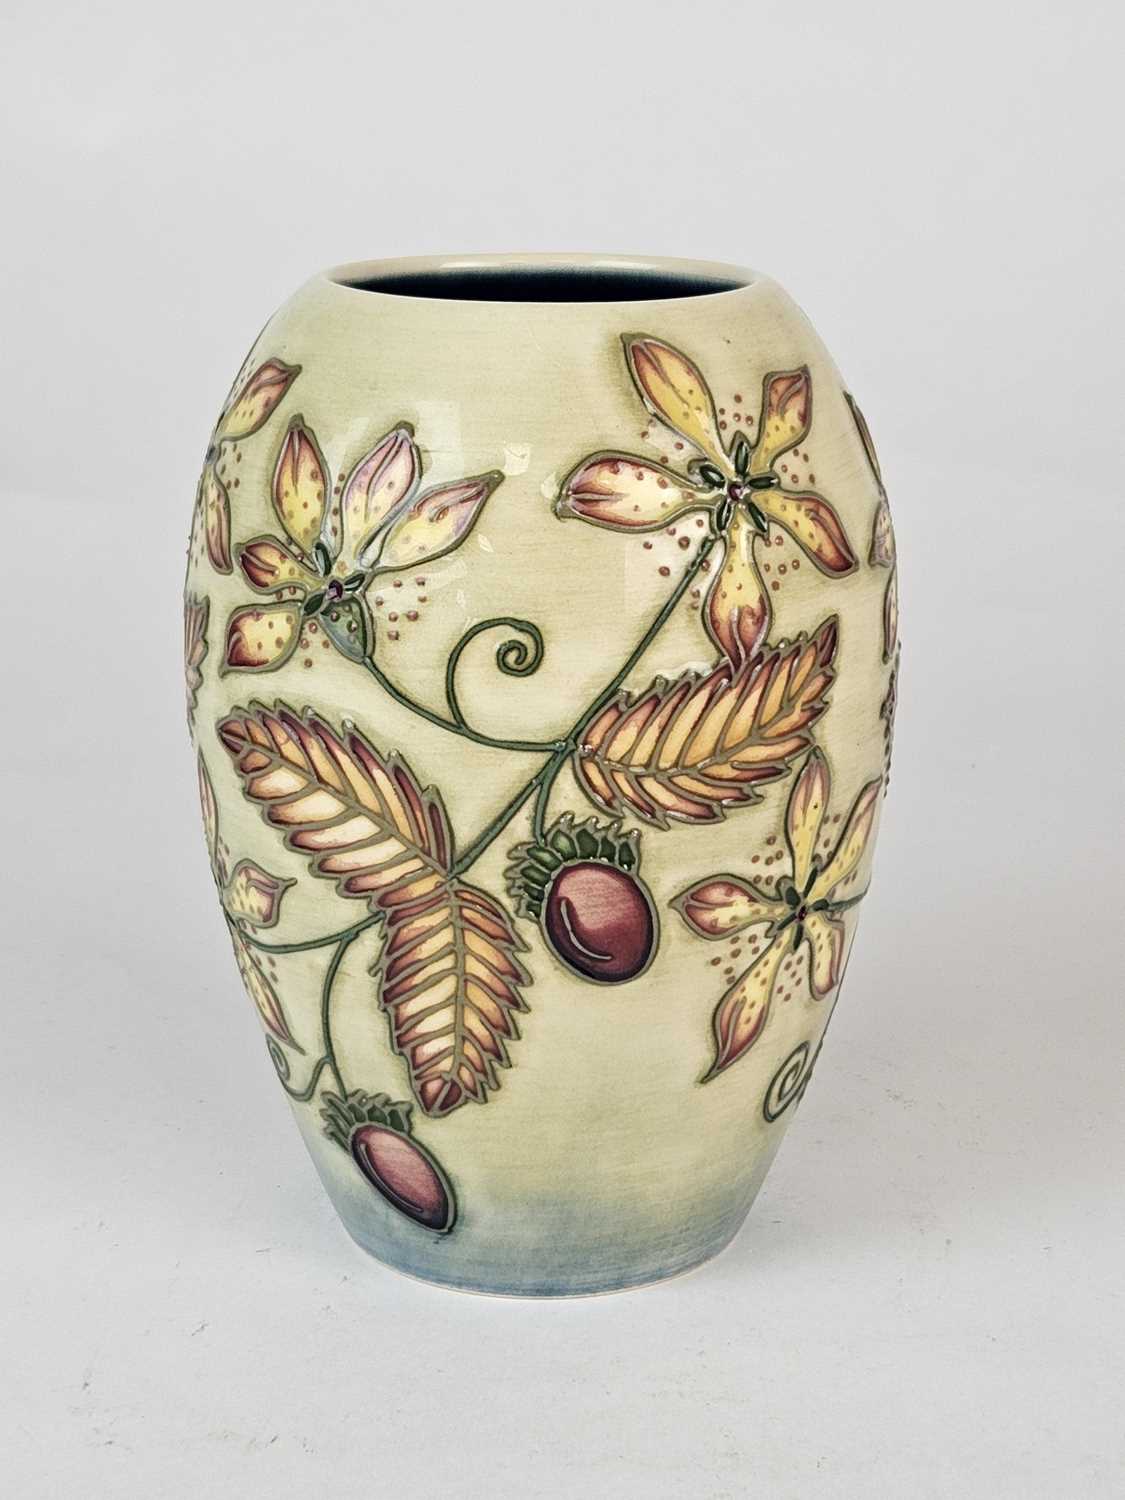 Moorcroft 'Serviceberry' vase designed by Nicola Slaney